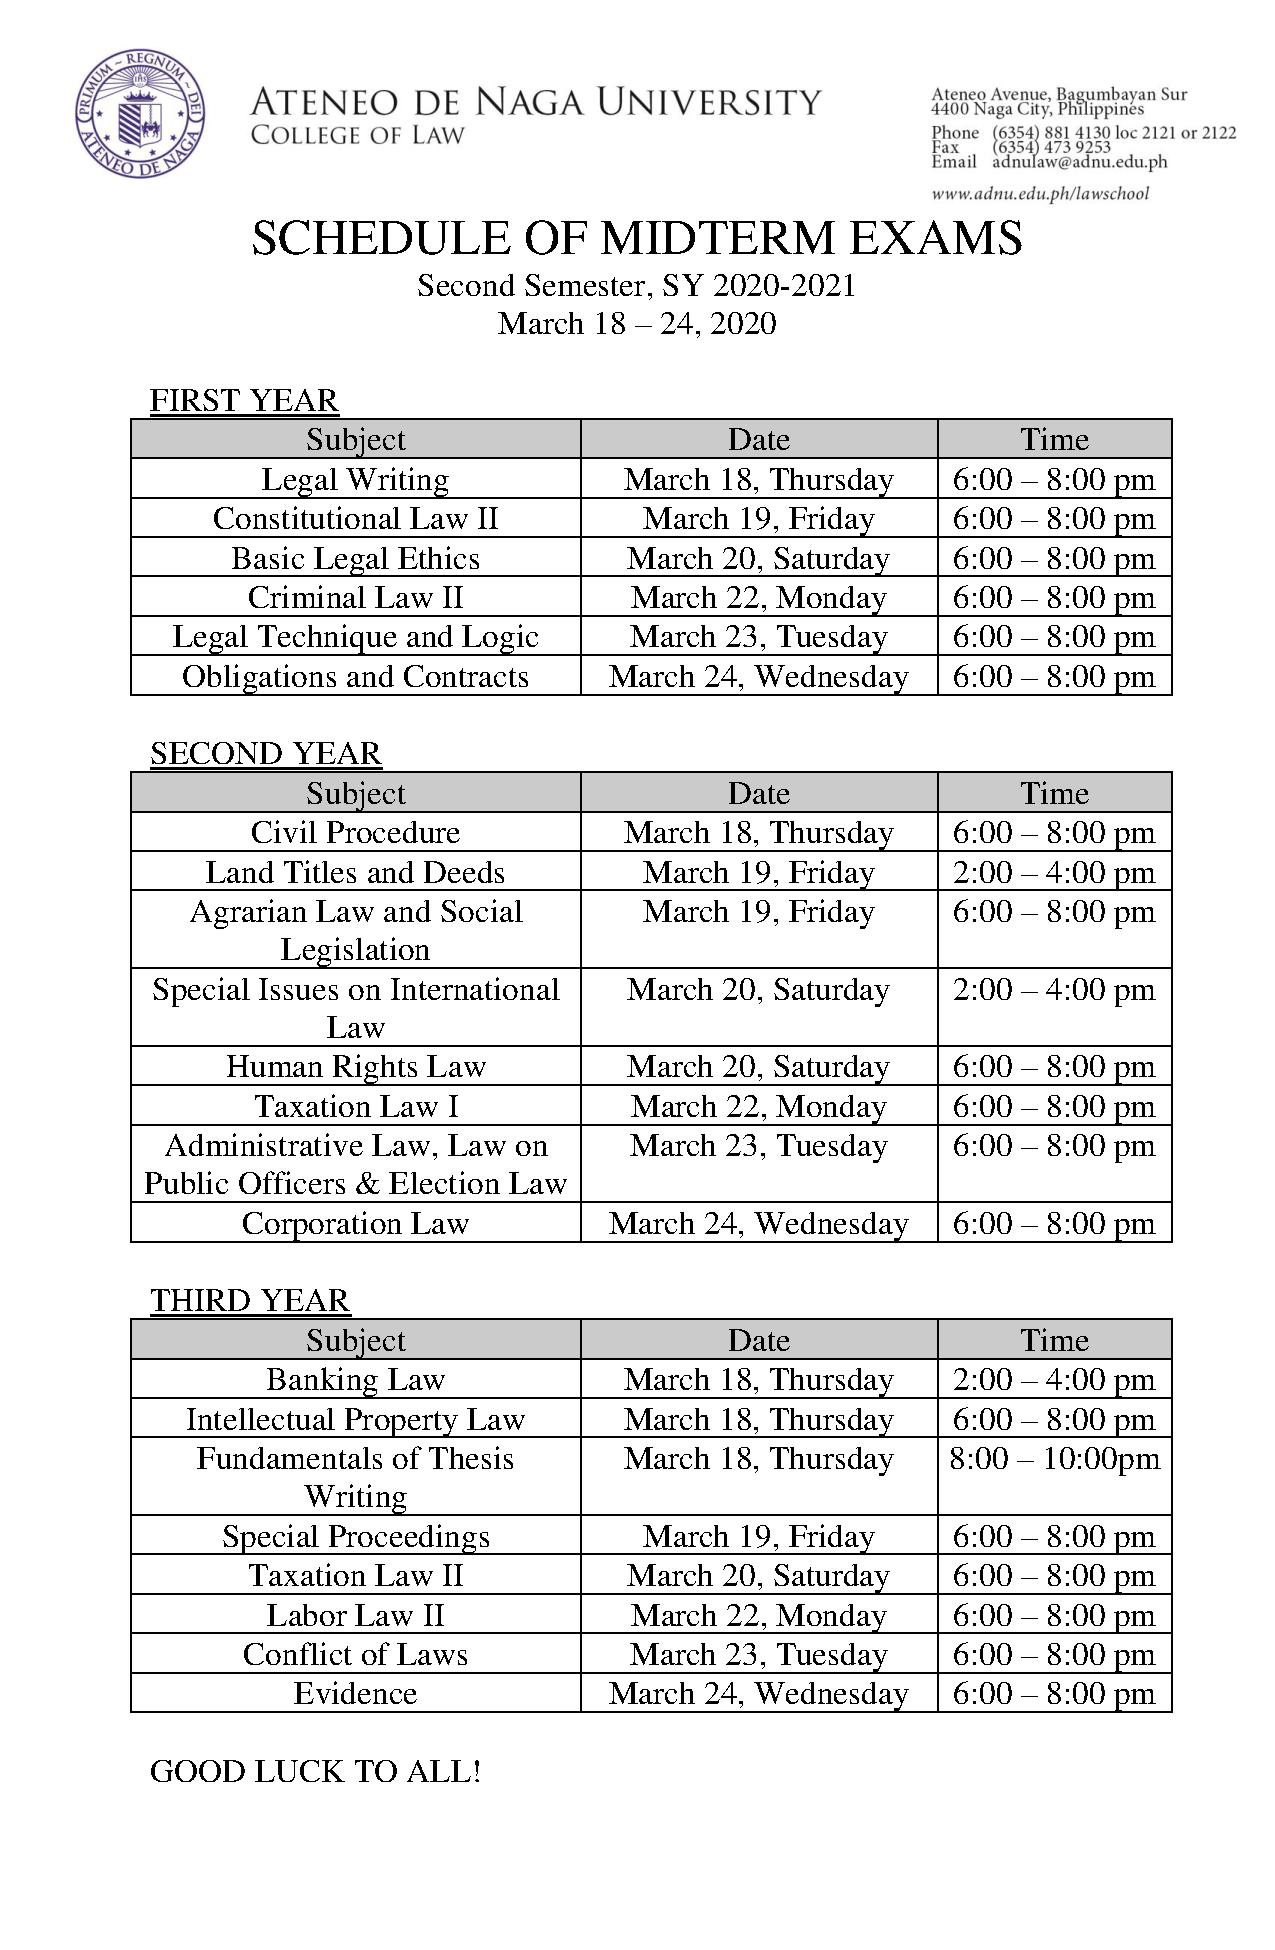 Schedule of Midterm Exams